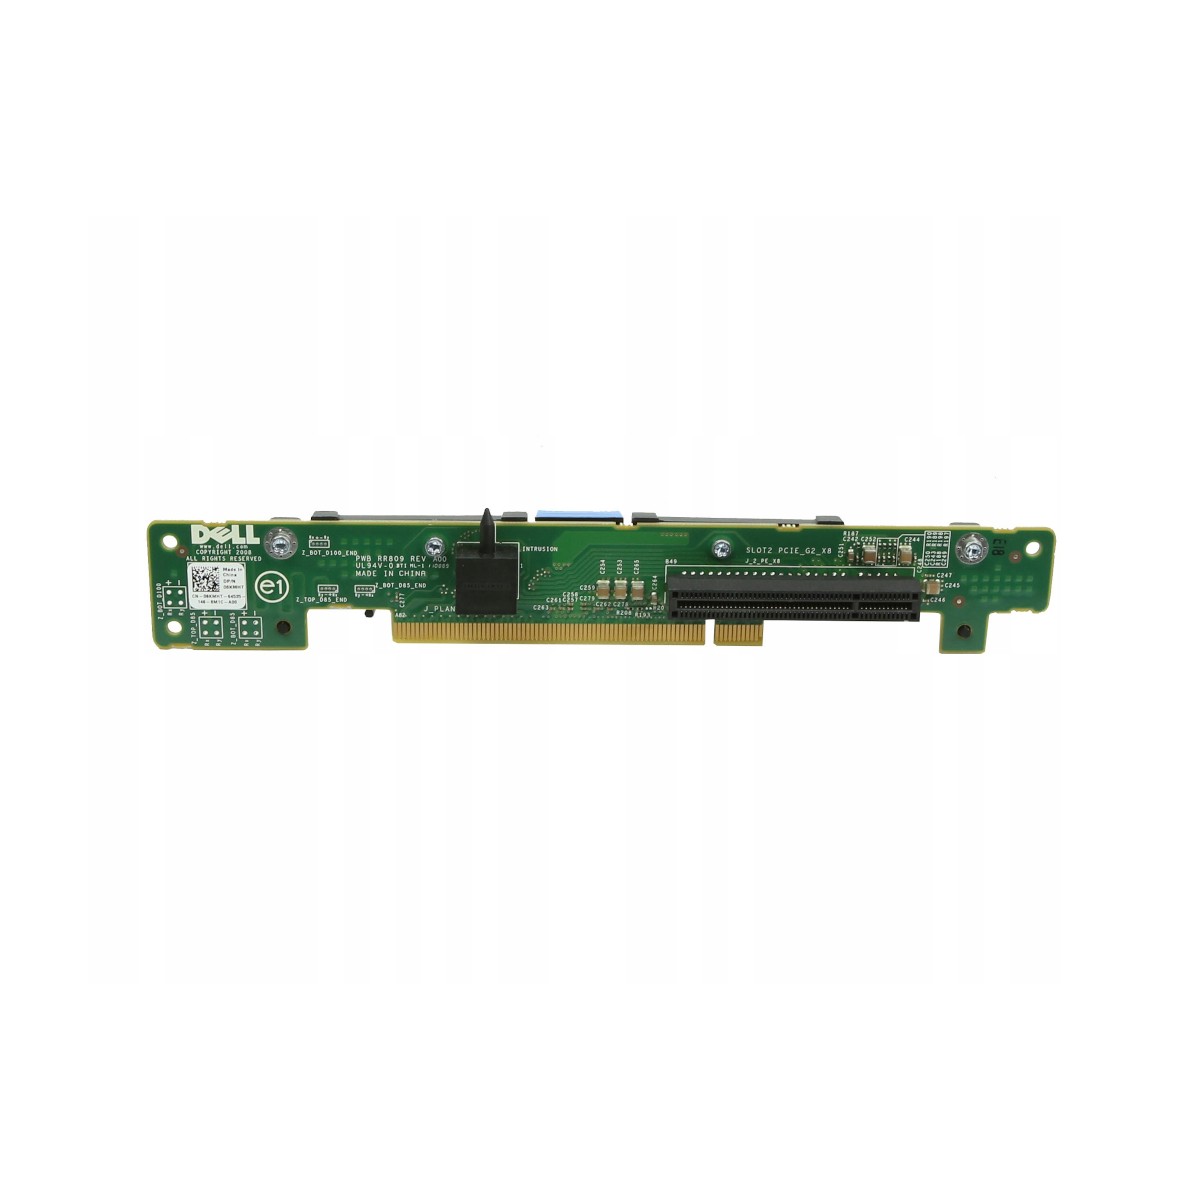 RISER BOARD Dell PowerEdge R610 PCIe x8 06KMHT